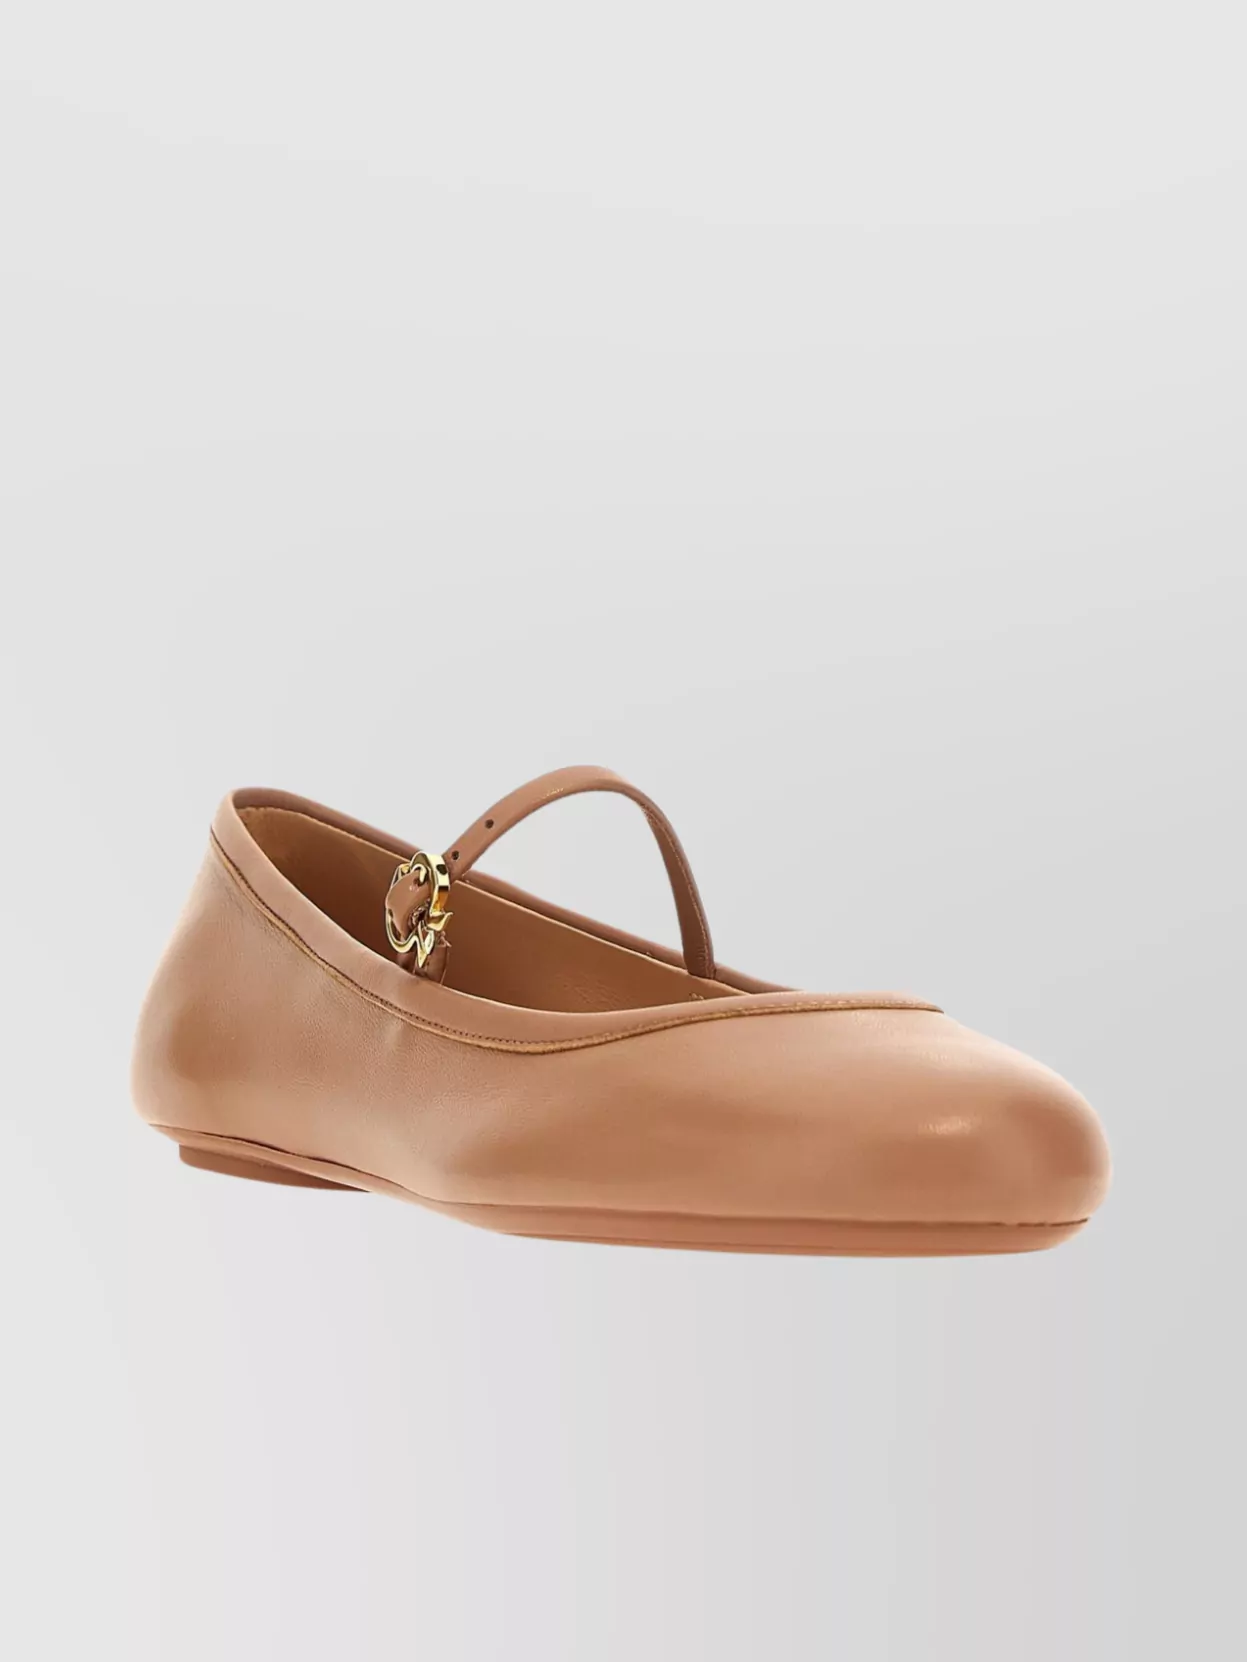 Shop Gianvito Rossi 'carla' Leather Ballerina Flats